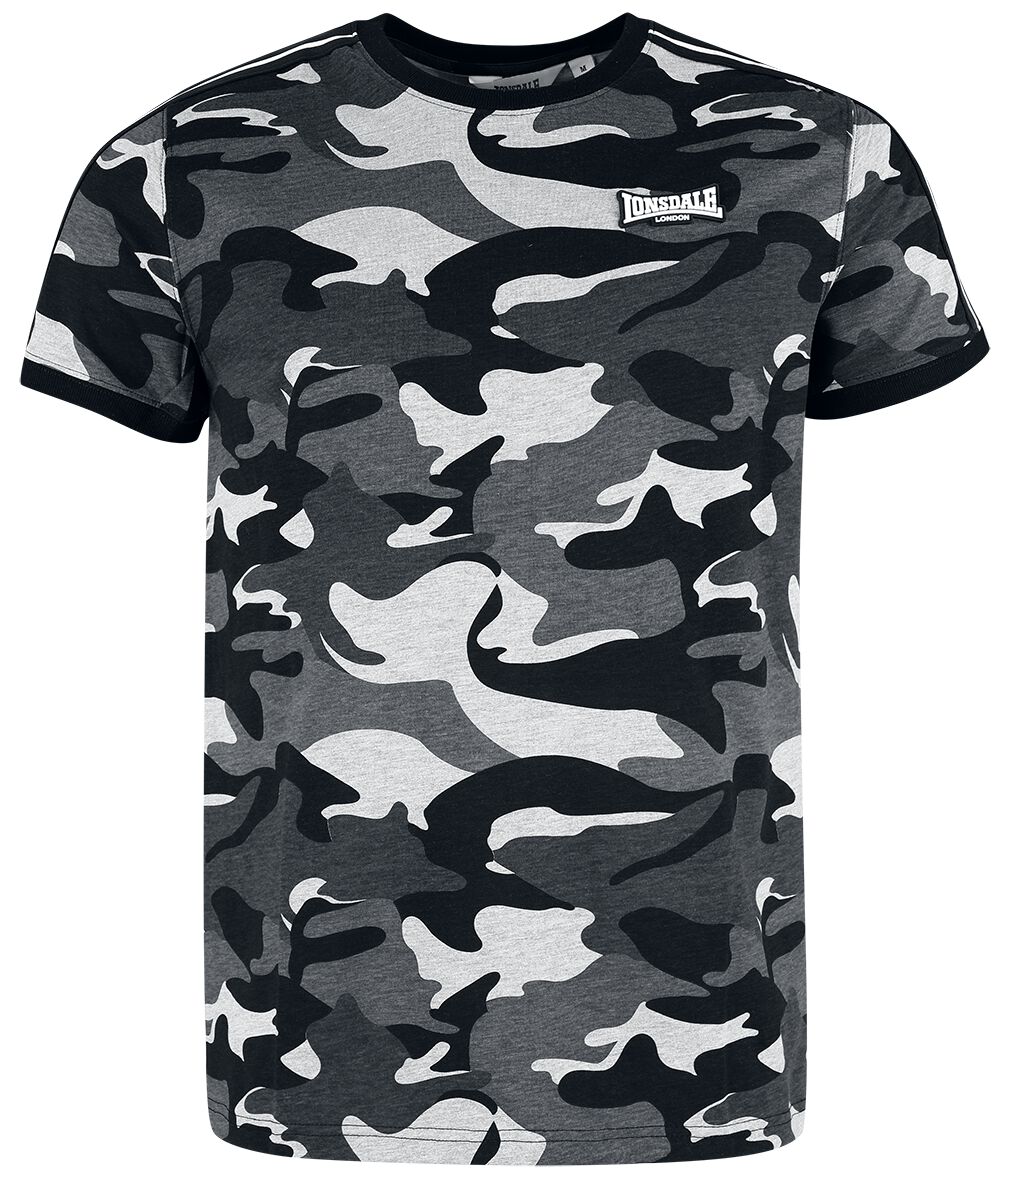 Lonsdale London - Camouflage/Flecktarn T-Shirt - GUNNISTA - S bis XXL - für Männer - Größe S - graucamo